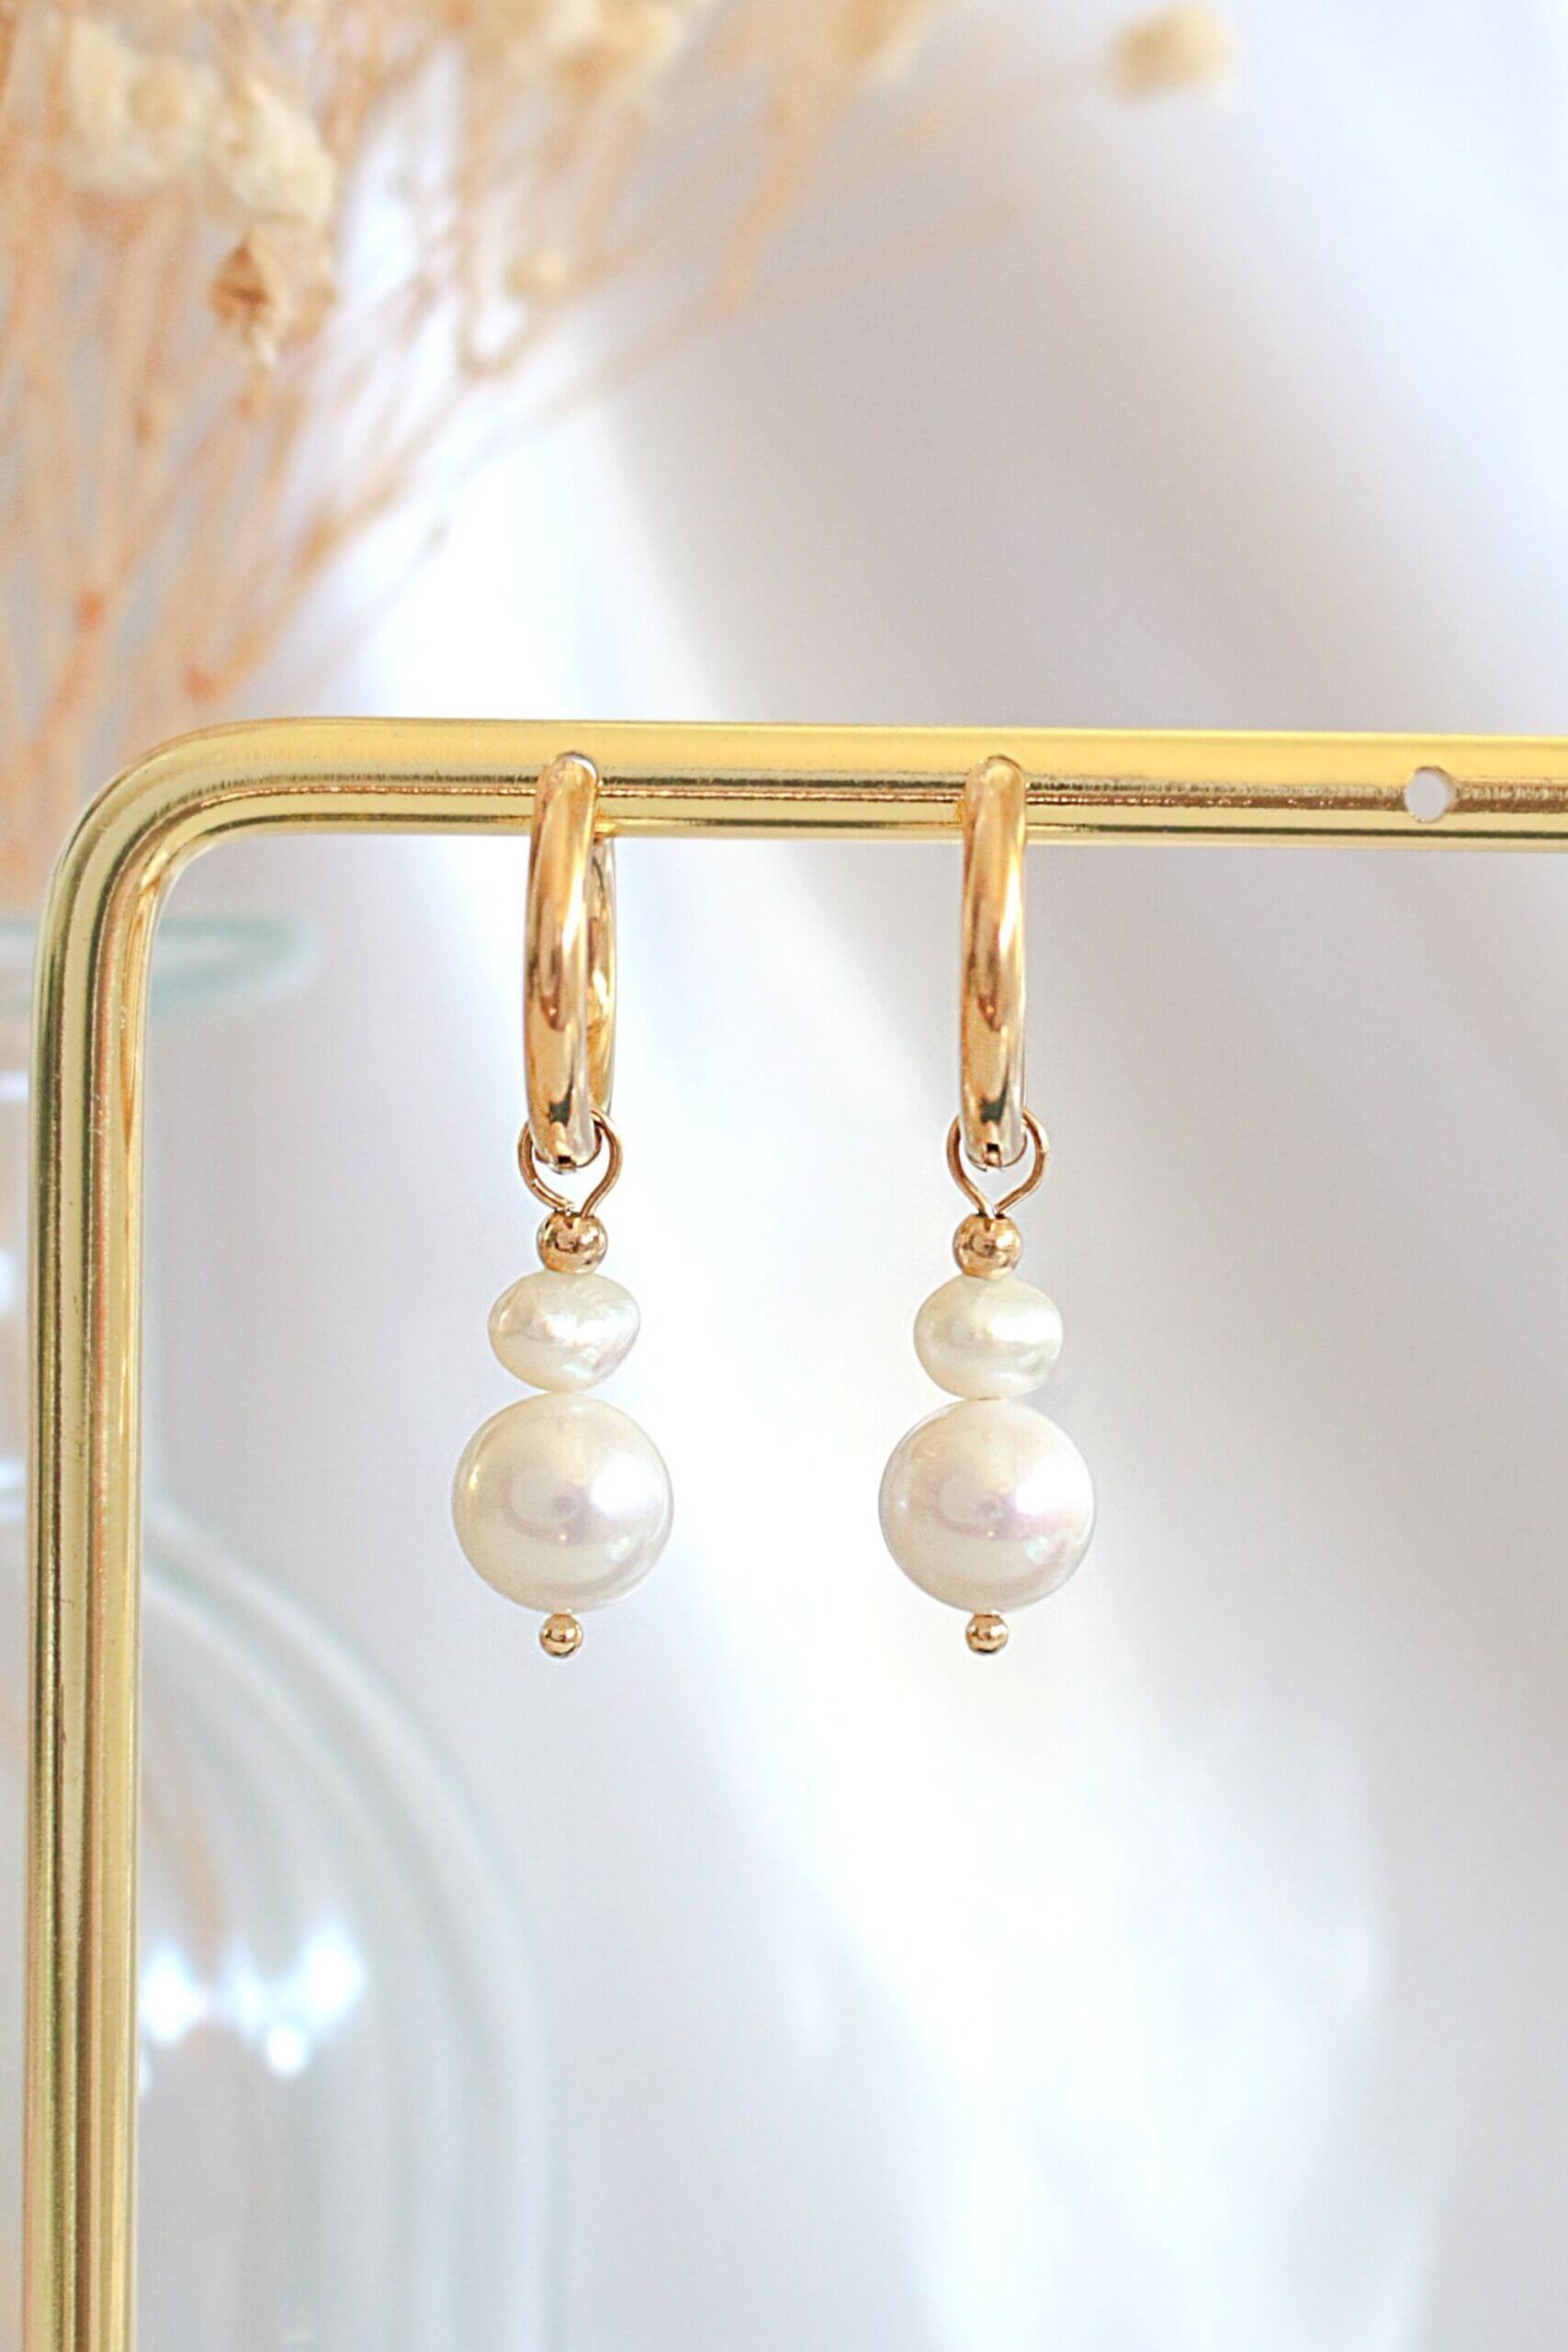 24K Gold Plated Pearl Hoop Earrings - Hypoallergenic & Handmade in Europe Bijou Her